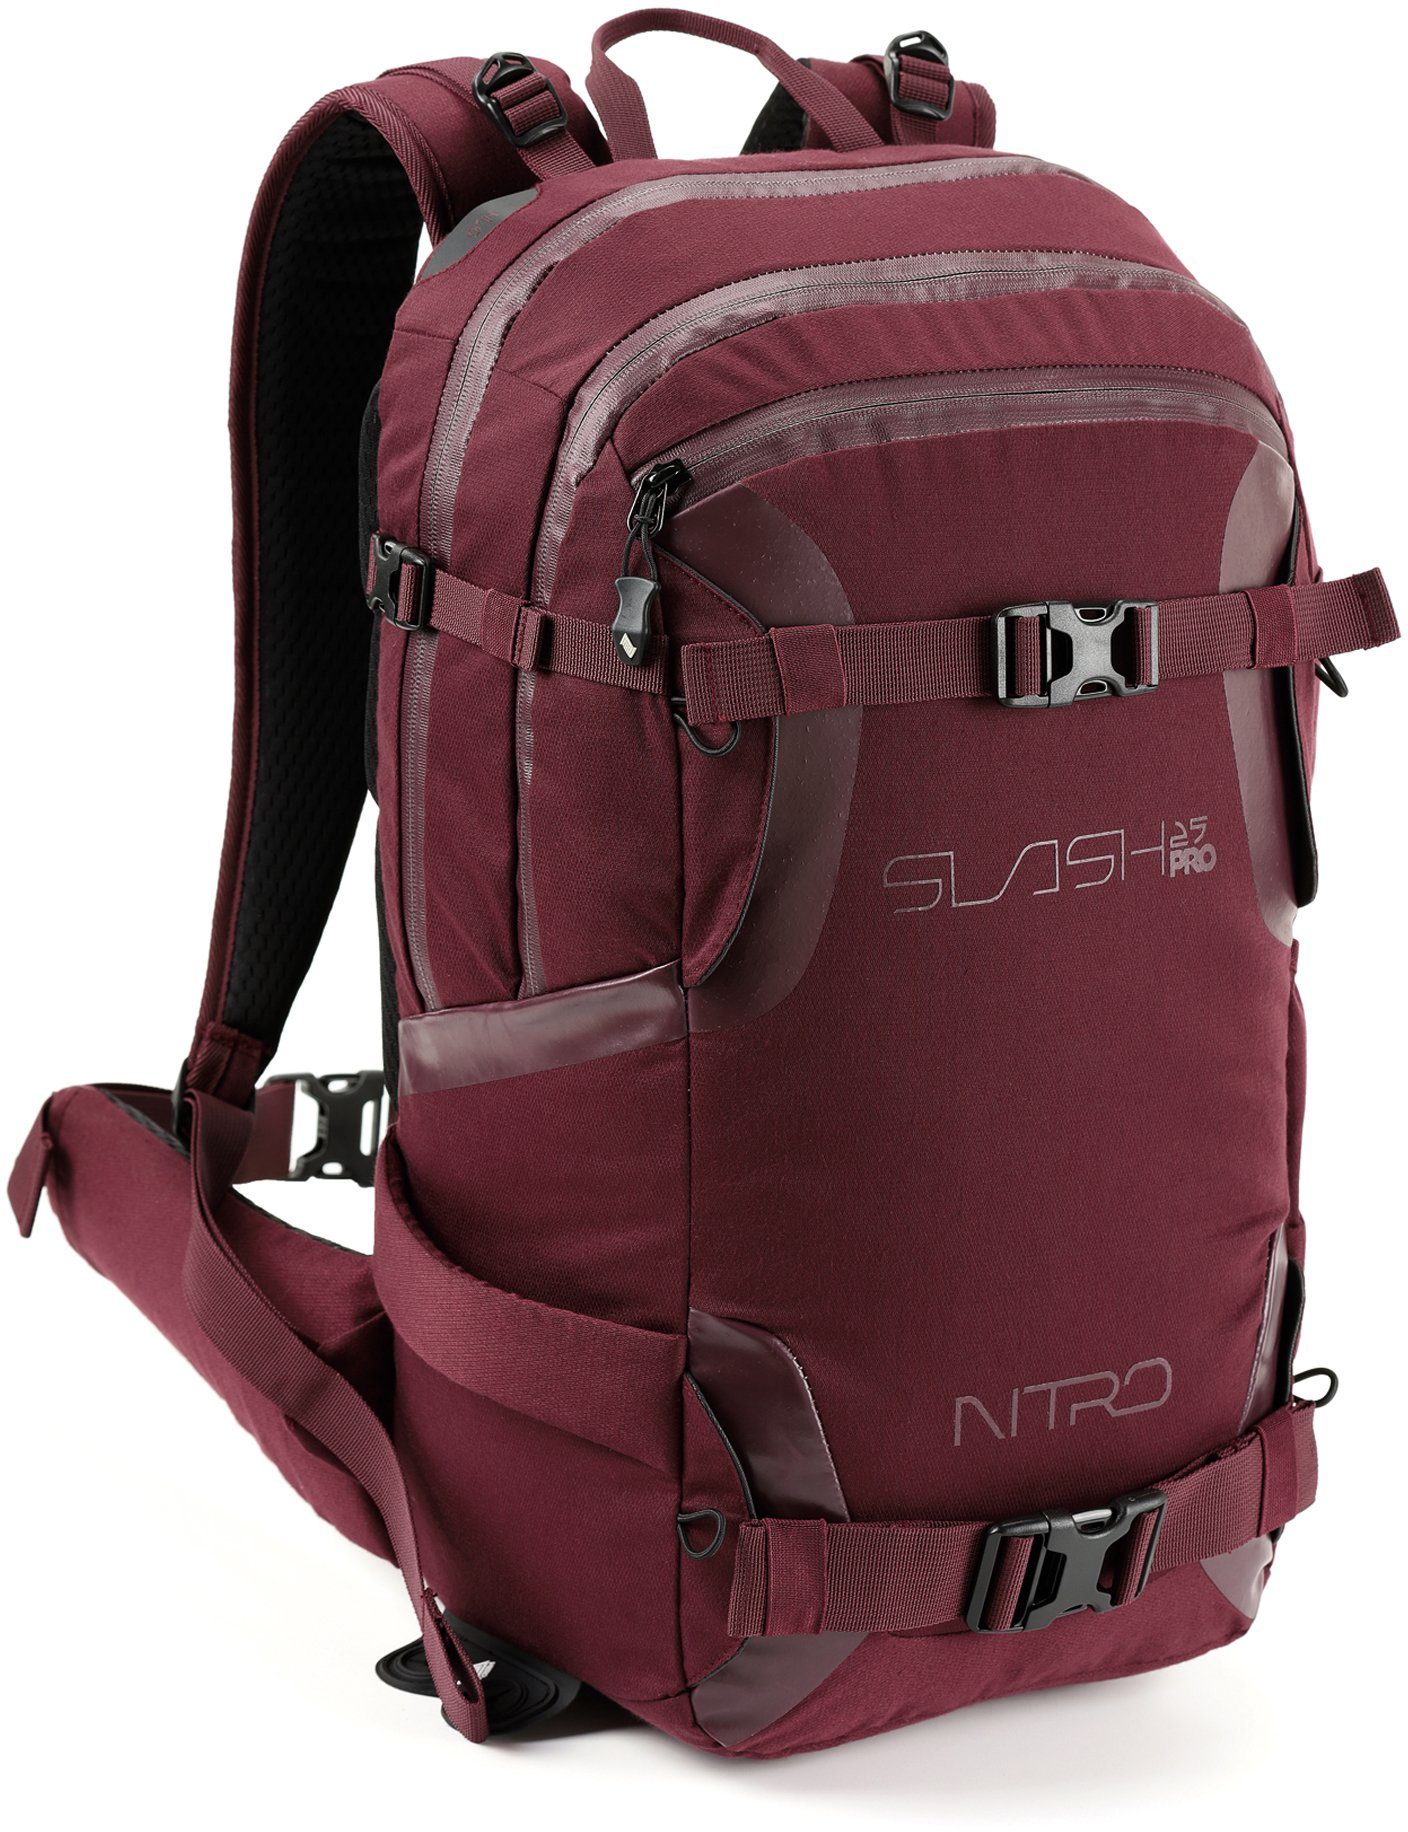 Wintersport Slash 25 Pro, Freizeitrucksack den speziell NITRO für Wine, konzipiert